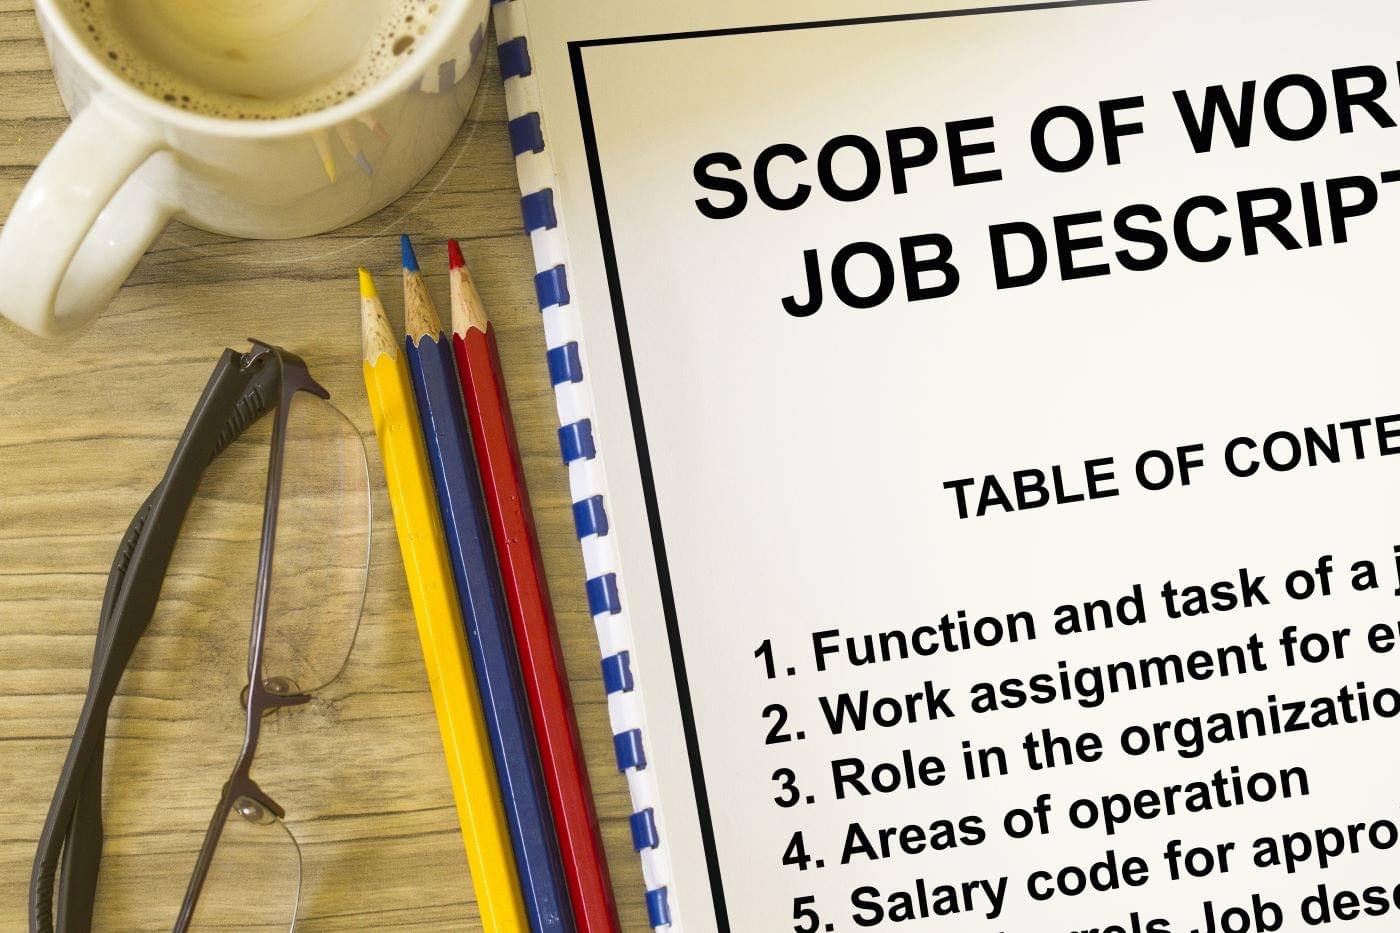 Pencils, glasses, coffee, and a notebook describing job descriptions